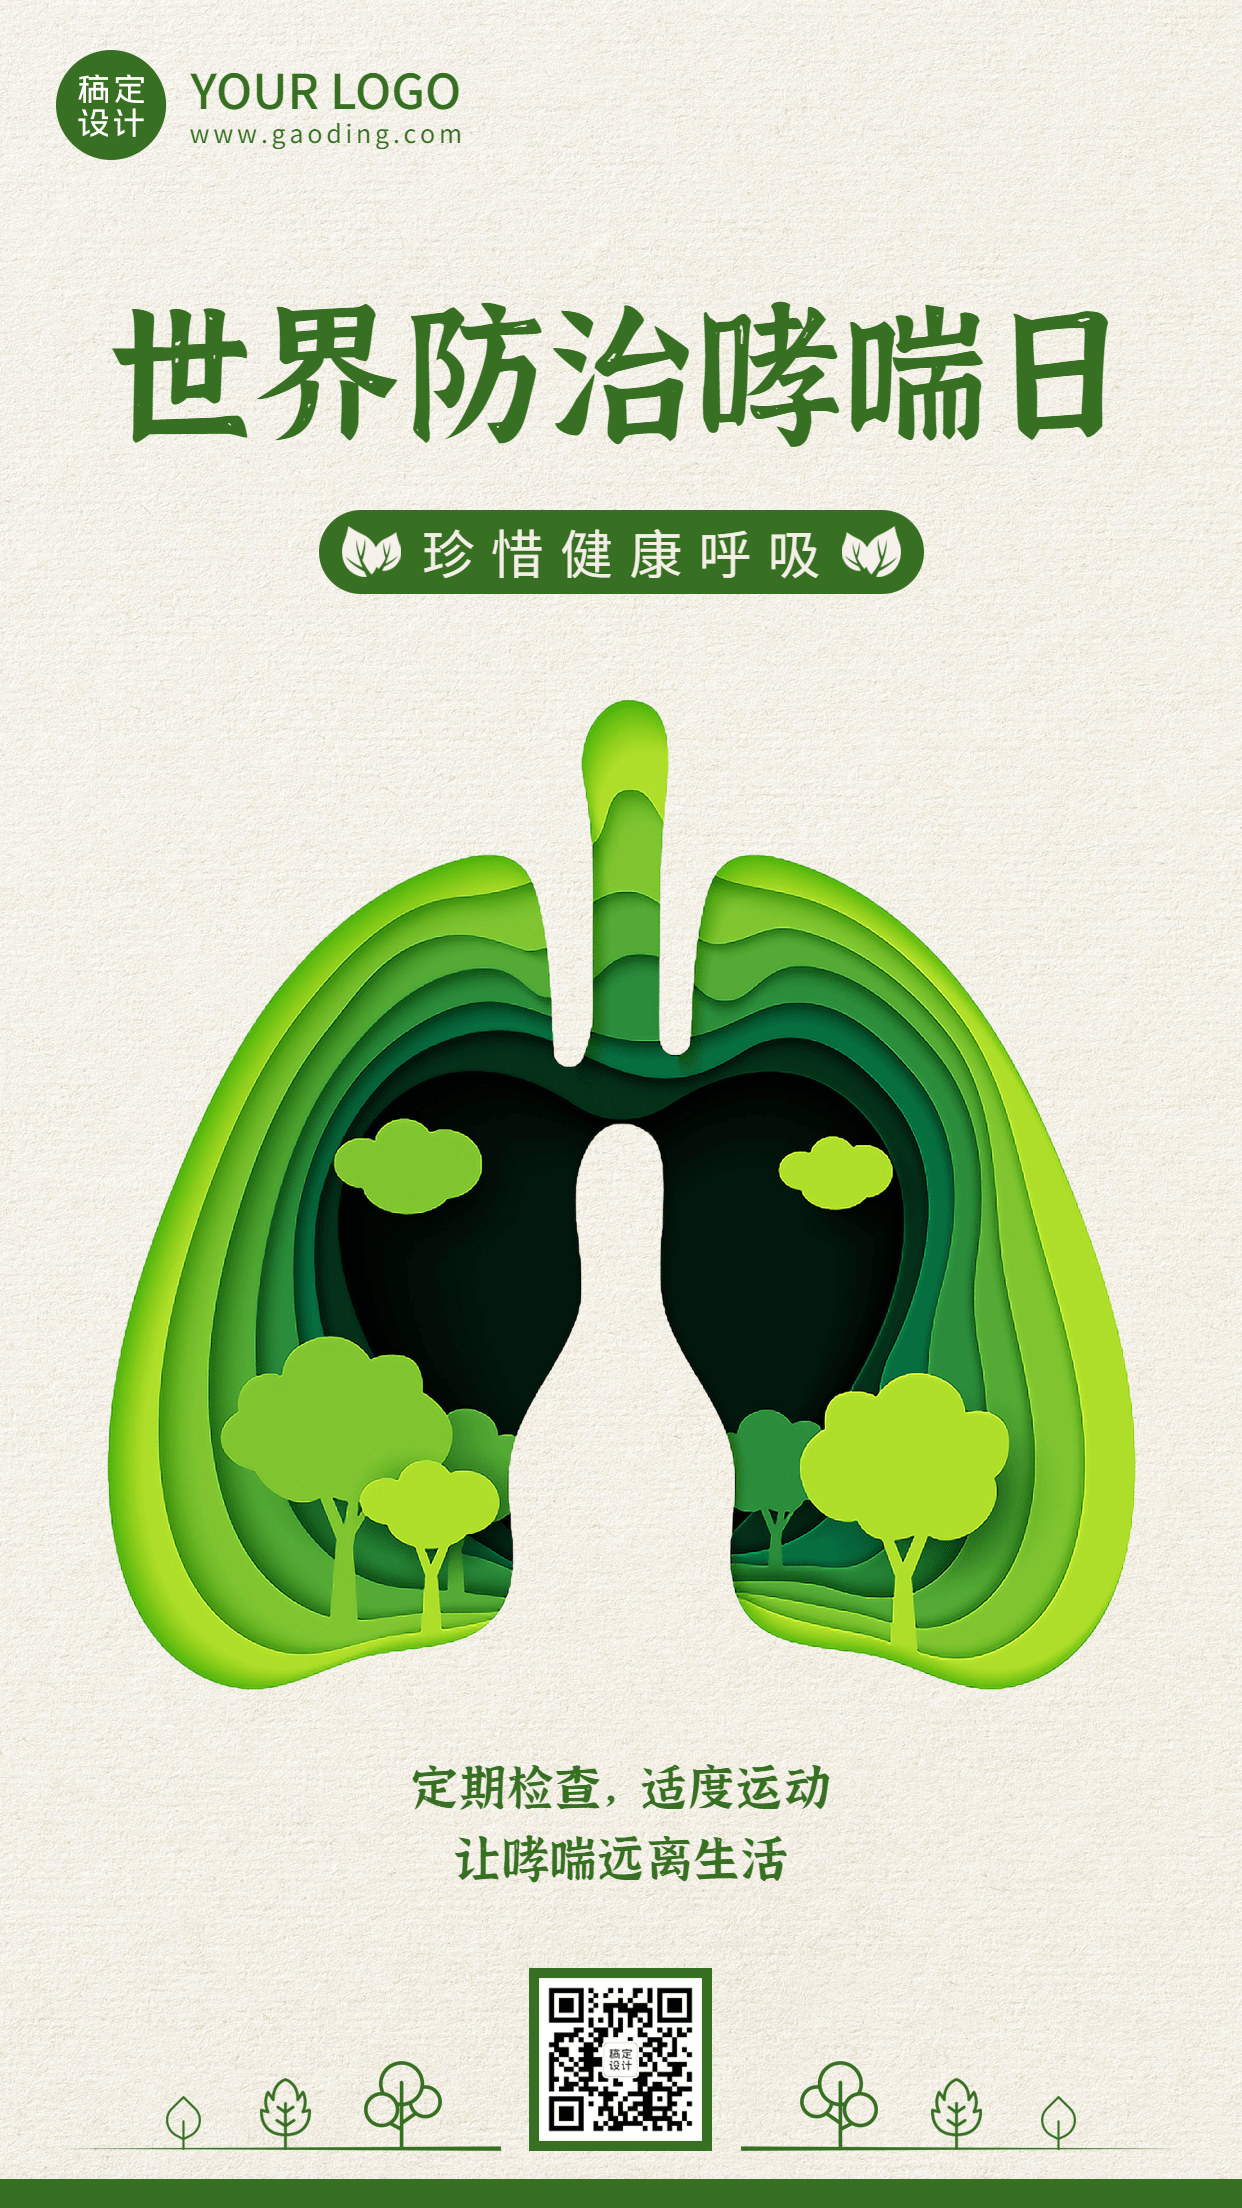 世界防治哮喘日节日宣传手机海报预览效果